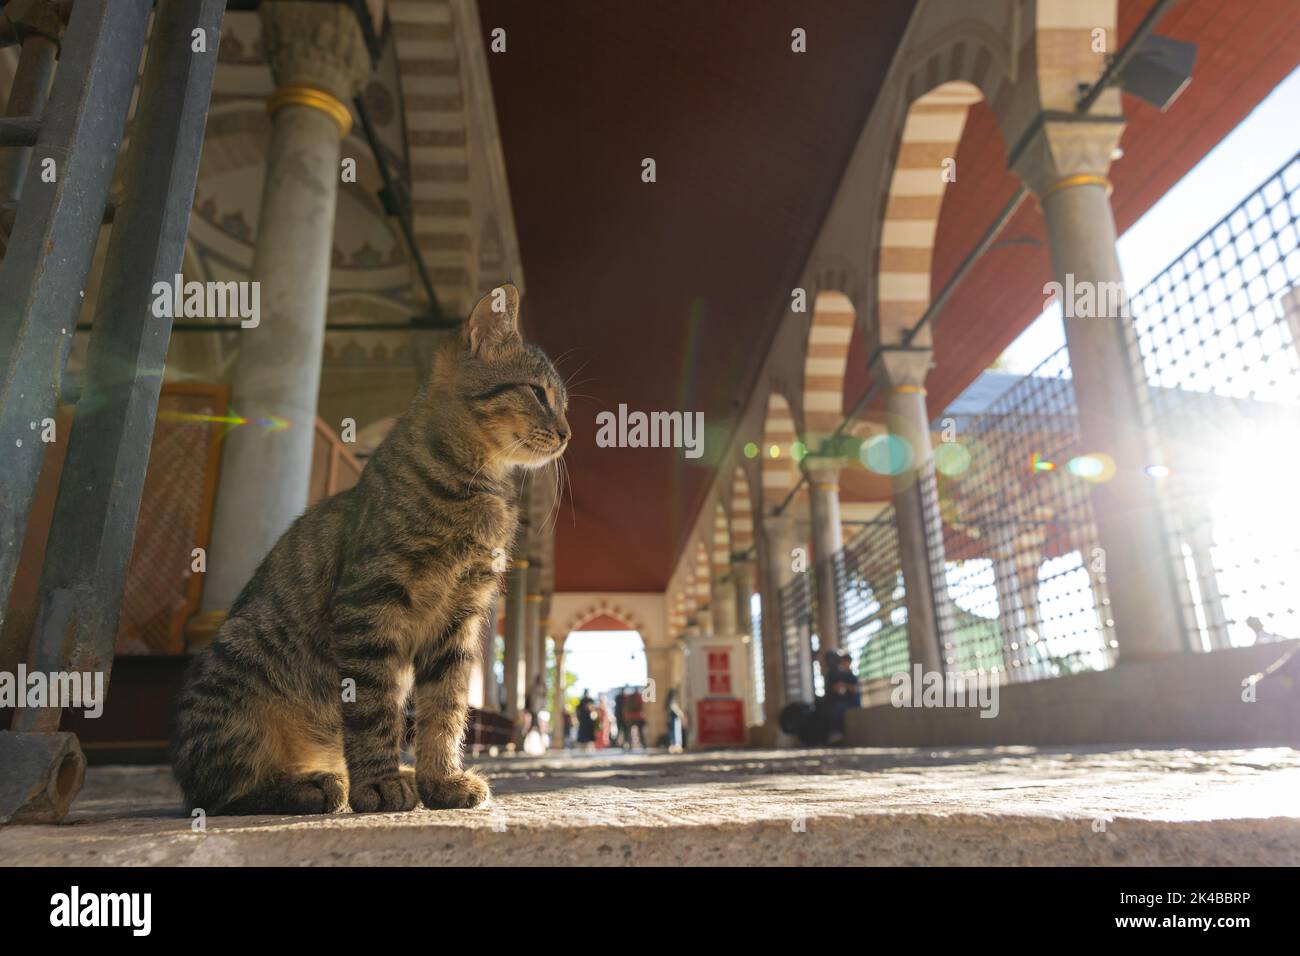 Streunende Katzen aus Istanbul. Eine streunende Katze, die in der Moschee sitzt. Türkische Kultur. Stockfoto